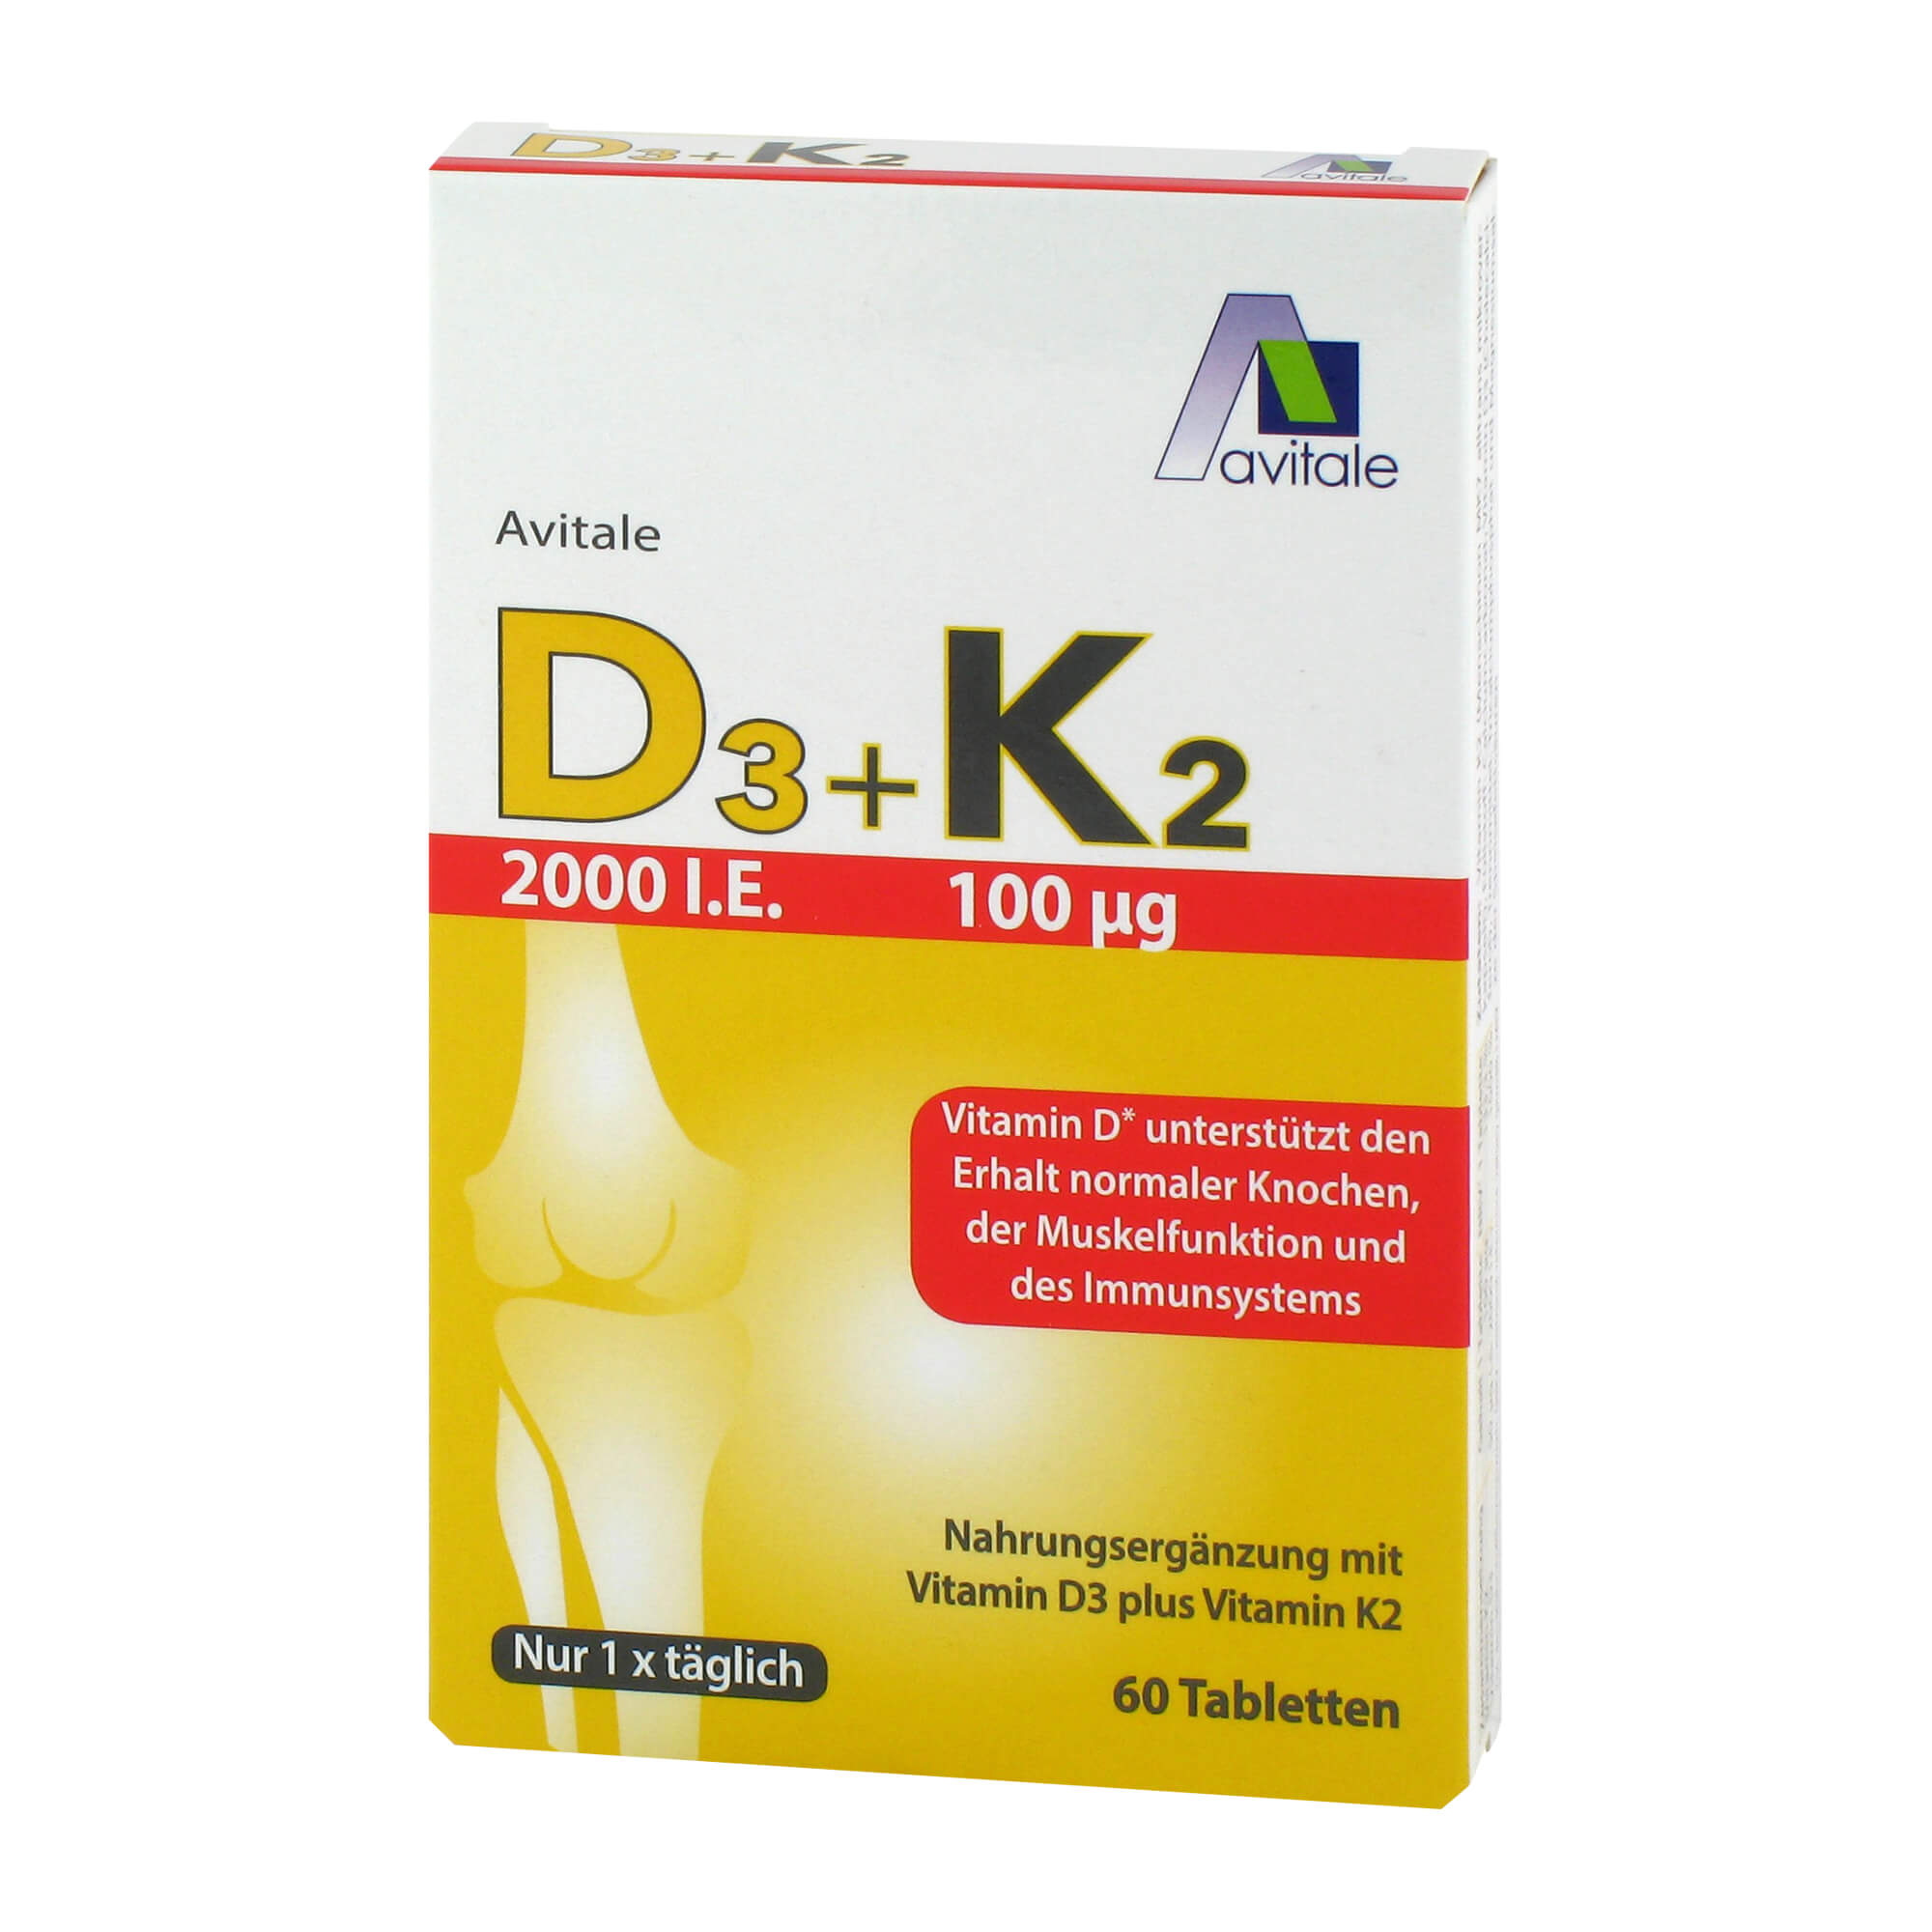 Nahrungsergänzungsmittel mit Vitamin D3 und Vitamin K2.